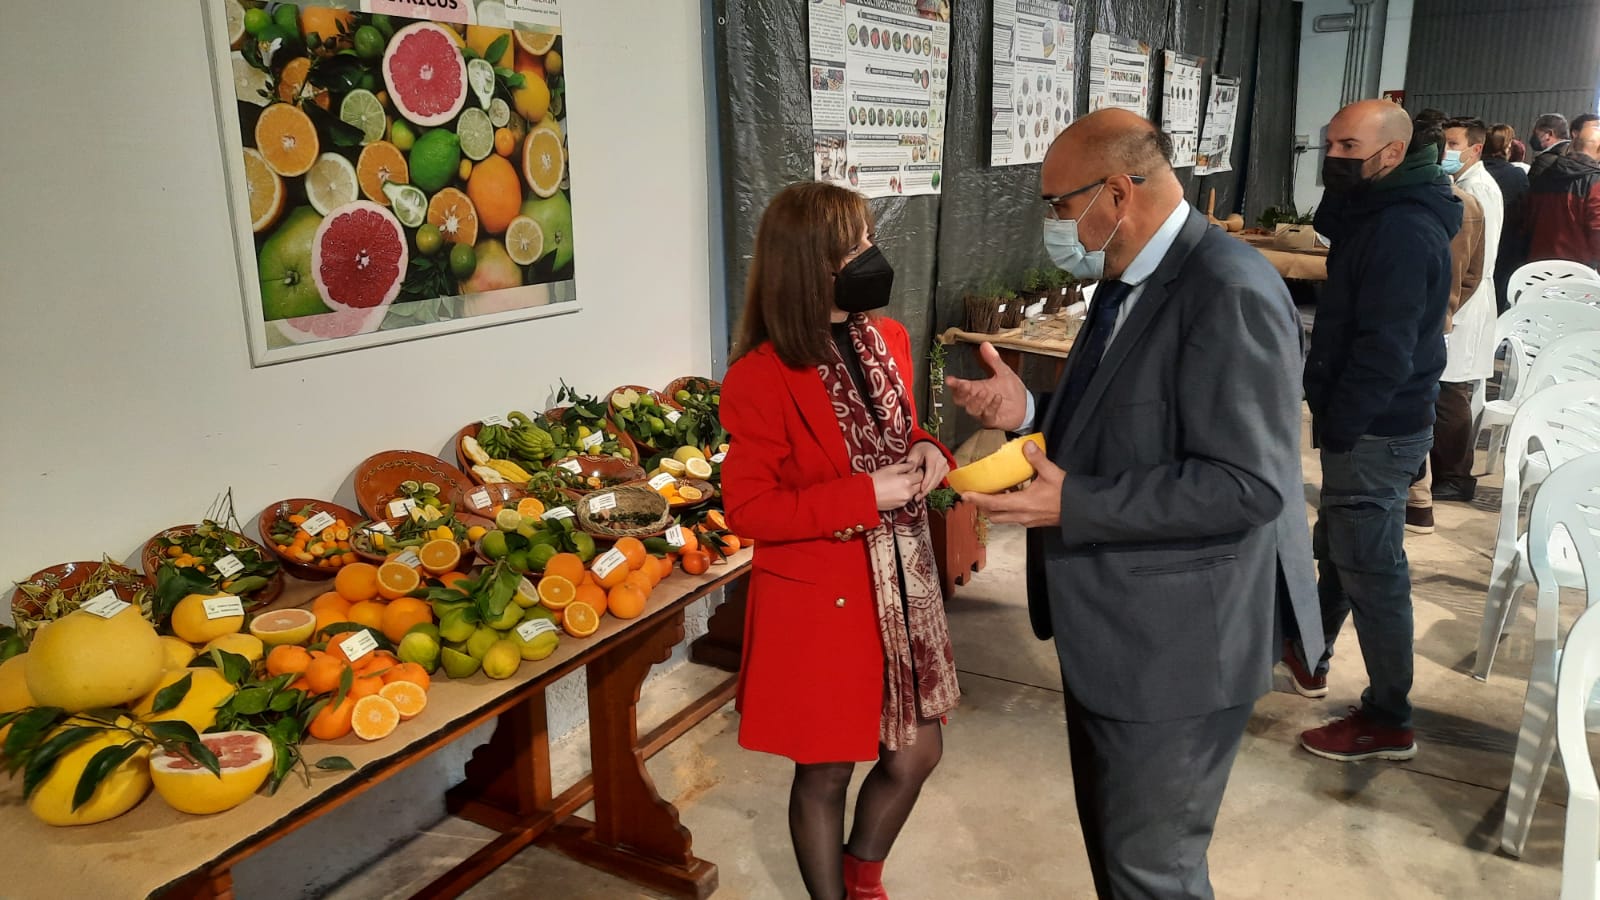 El IMIDA apuesta por aumentar la agrodiversidad hortofrutícola y su aplicación para la innovación gastronómica como seña de identidad regional